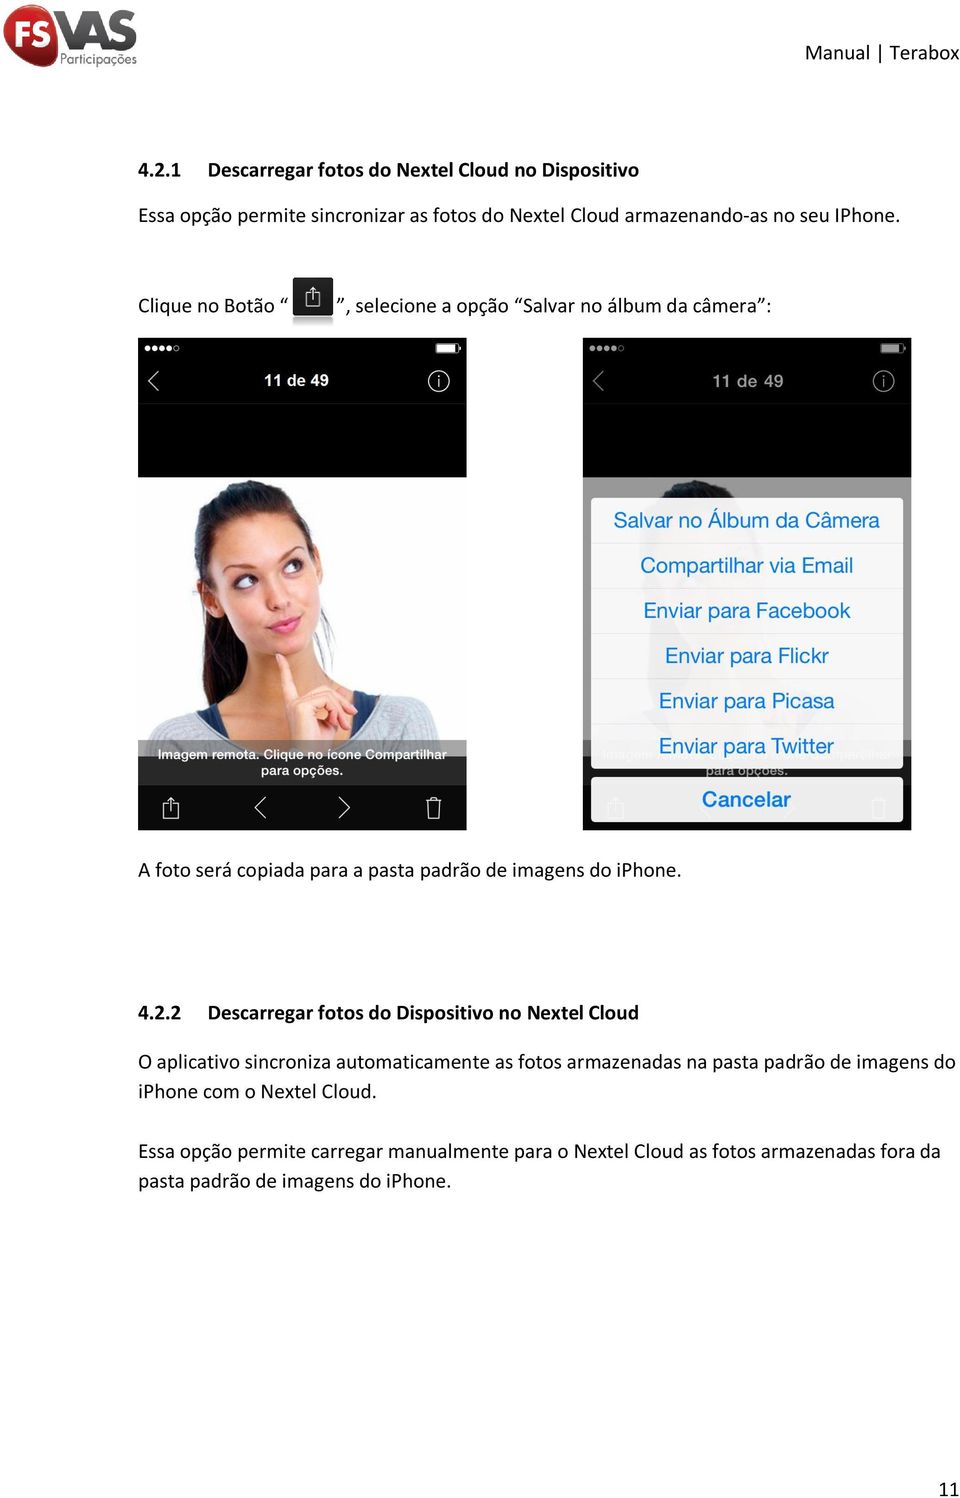 2 Descarregar fotos do Dispositivo no Nextel Cloud O aplicativo sincroniza automaticamente as fotos armazenadas na pasta padrão de imagens do